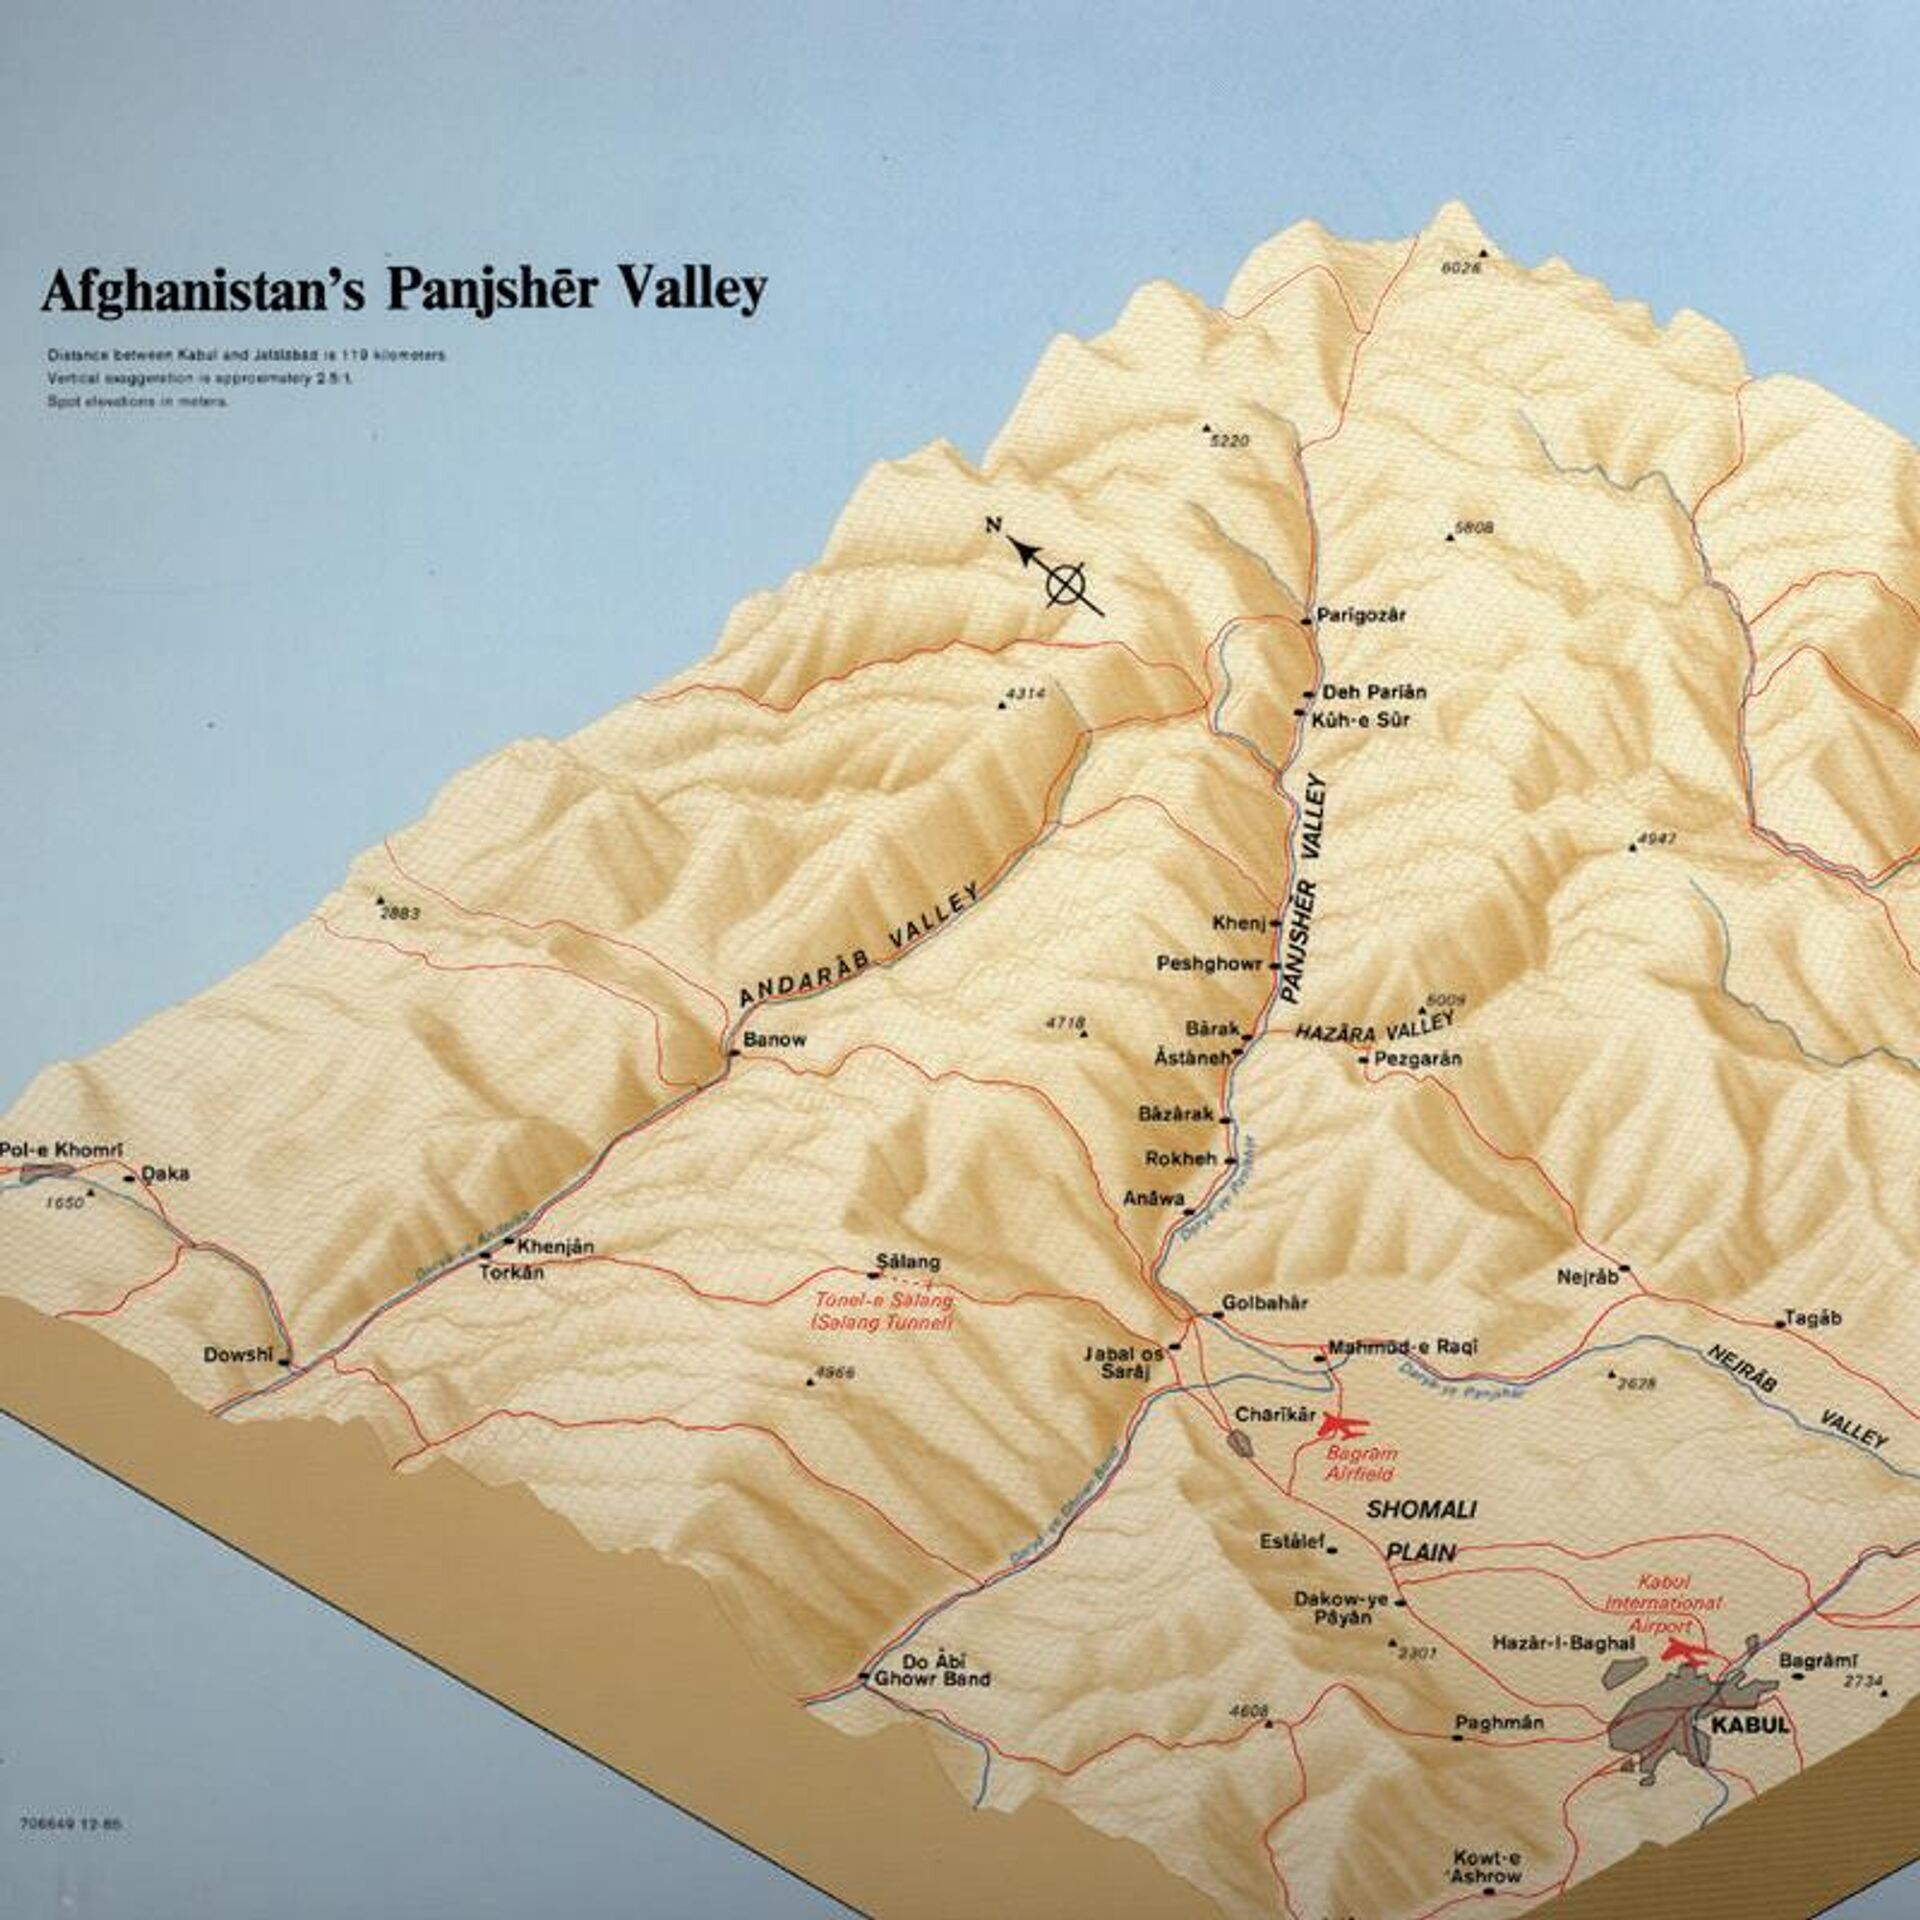 Ubicación del valle de Panshir, una región montañosa al noreste de Kabul, que históricamente ha servido como una formidable base de operaciones contra todo tipo de invasores - Sputnik Mundo, 1920, 20.08.2021